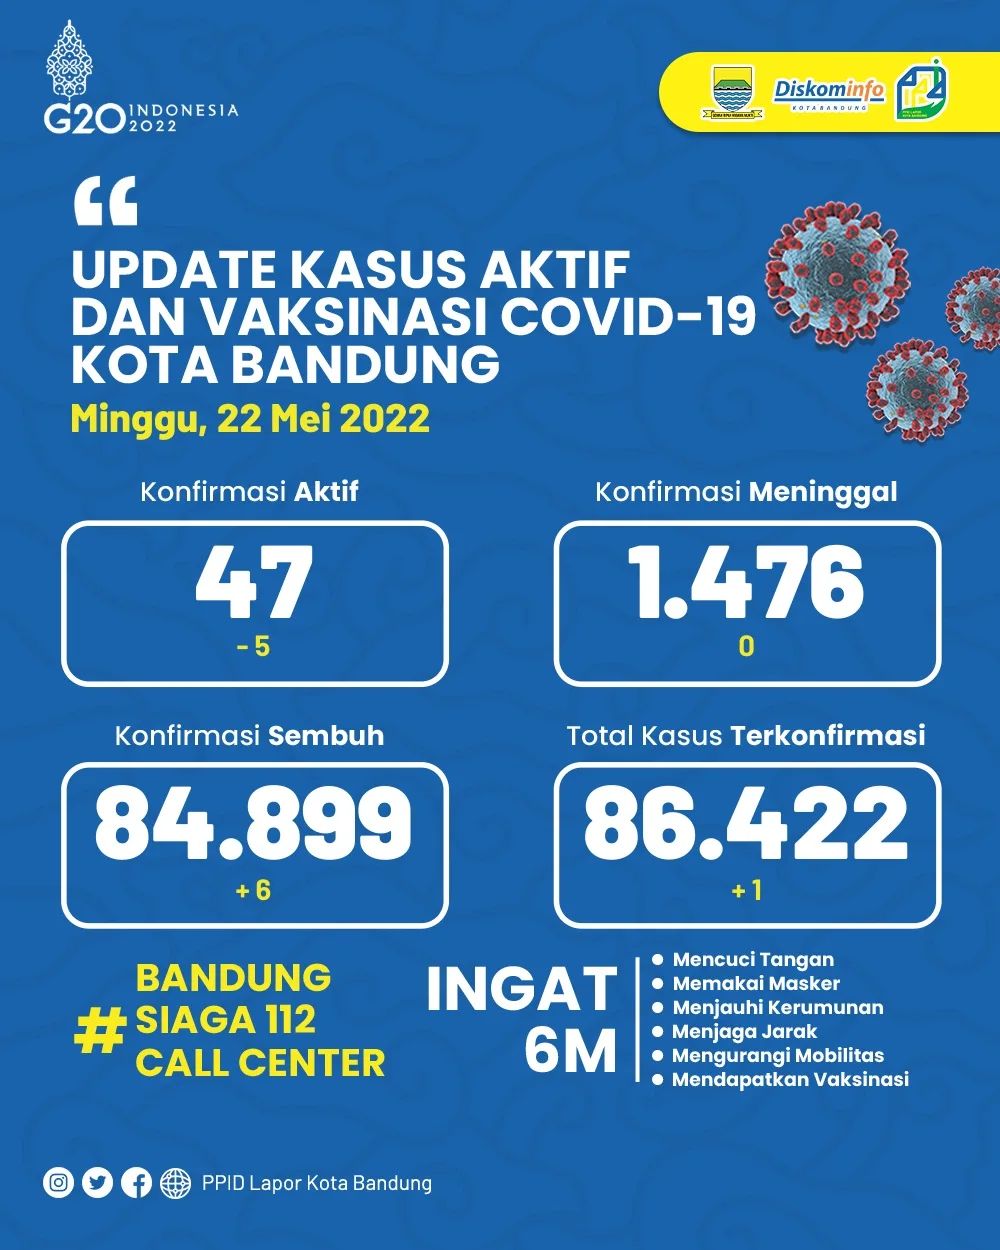 UPDATE STATISTIK COVID-19 DI KOTA BANDUNG PER TANGGAL 22 MEI 2022